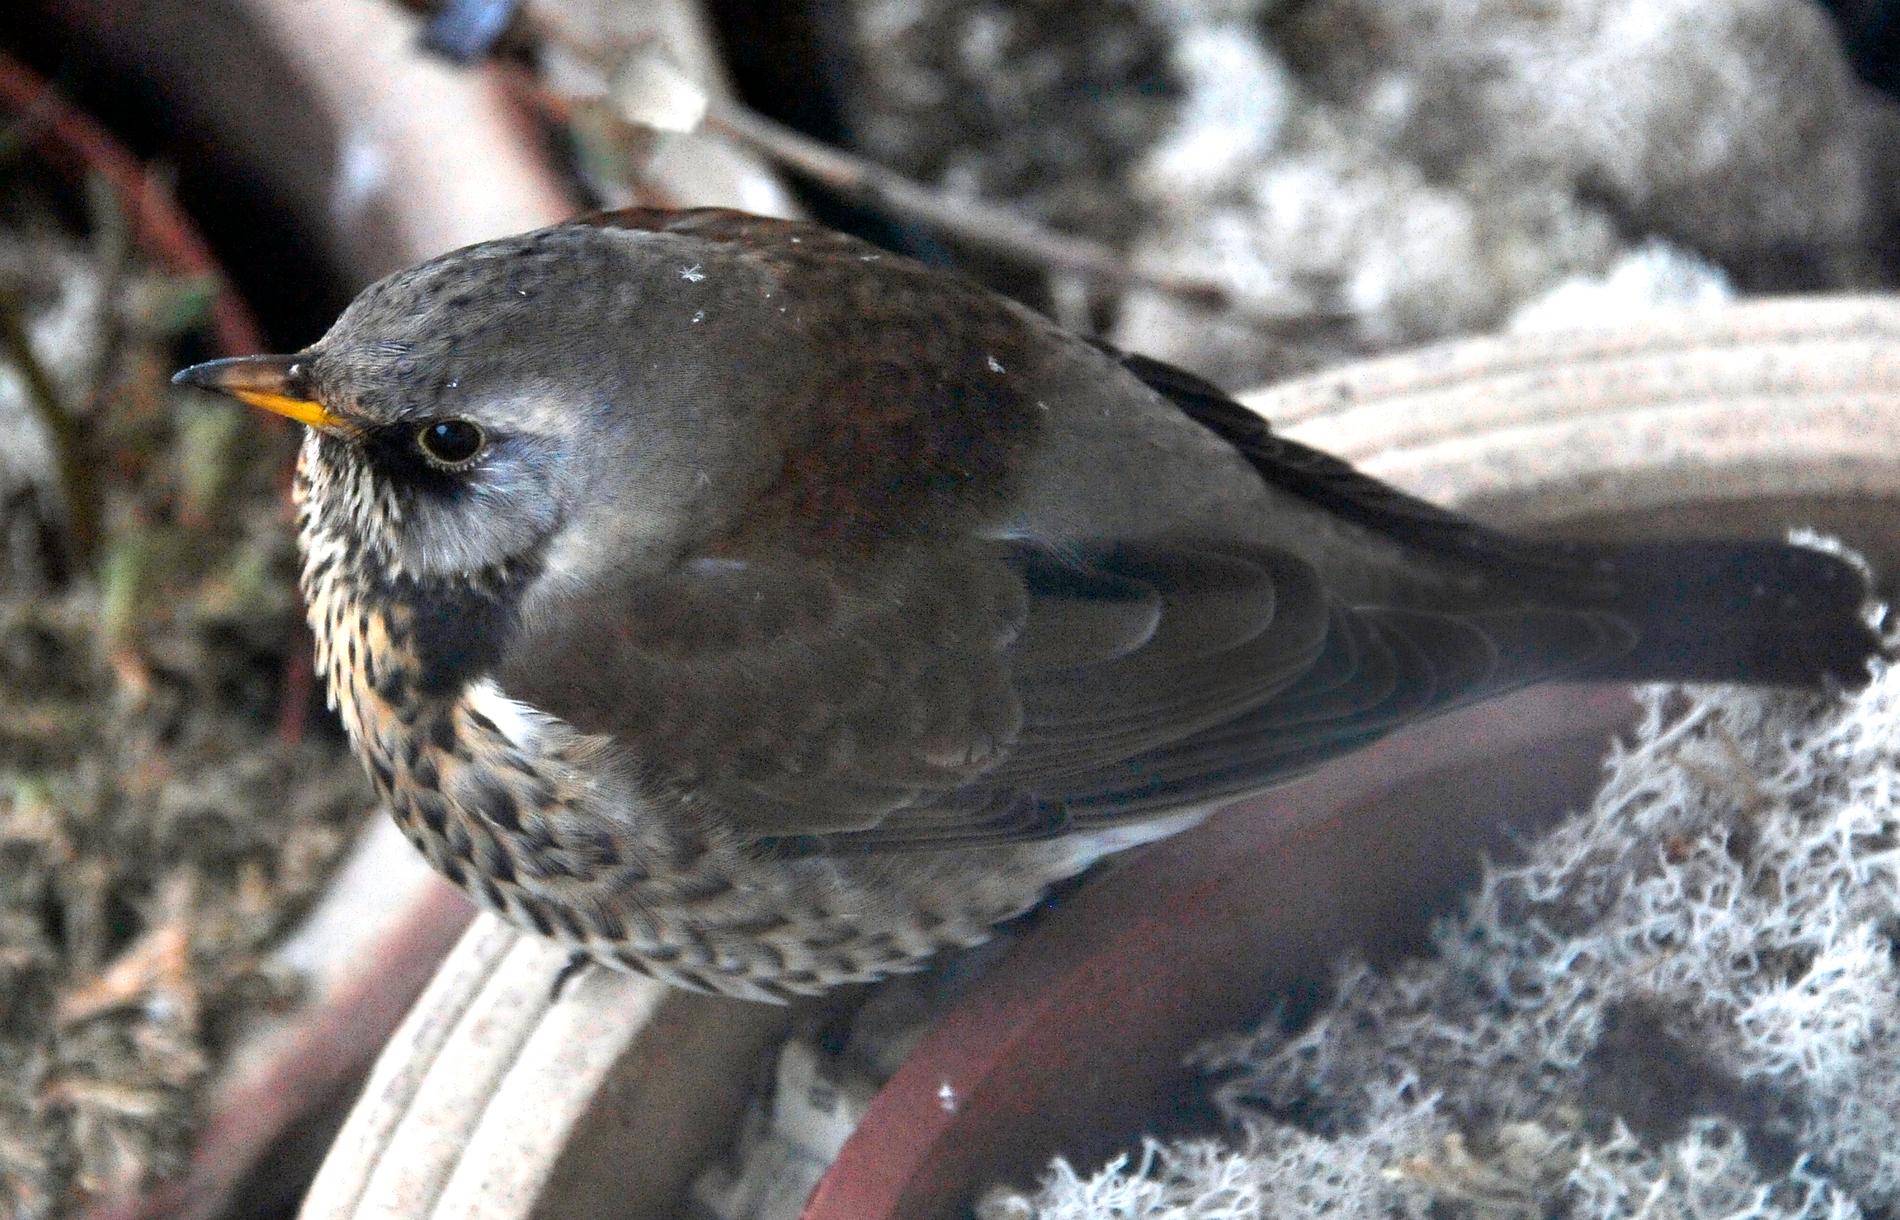 Björktrast burrar upp sig och väntar på våren. Fågeln hör till en av de nya arter som hamnar i kategorin "nära hotad" på rödlistan.